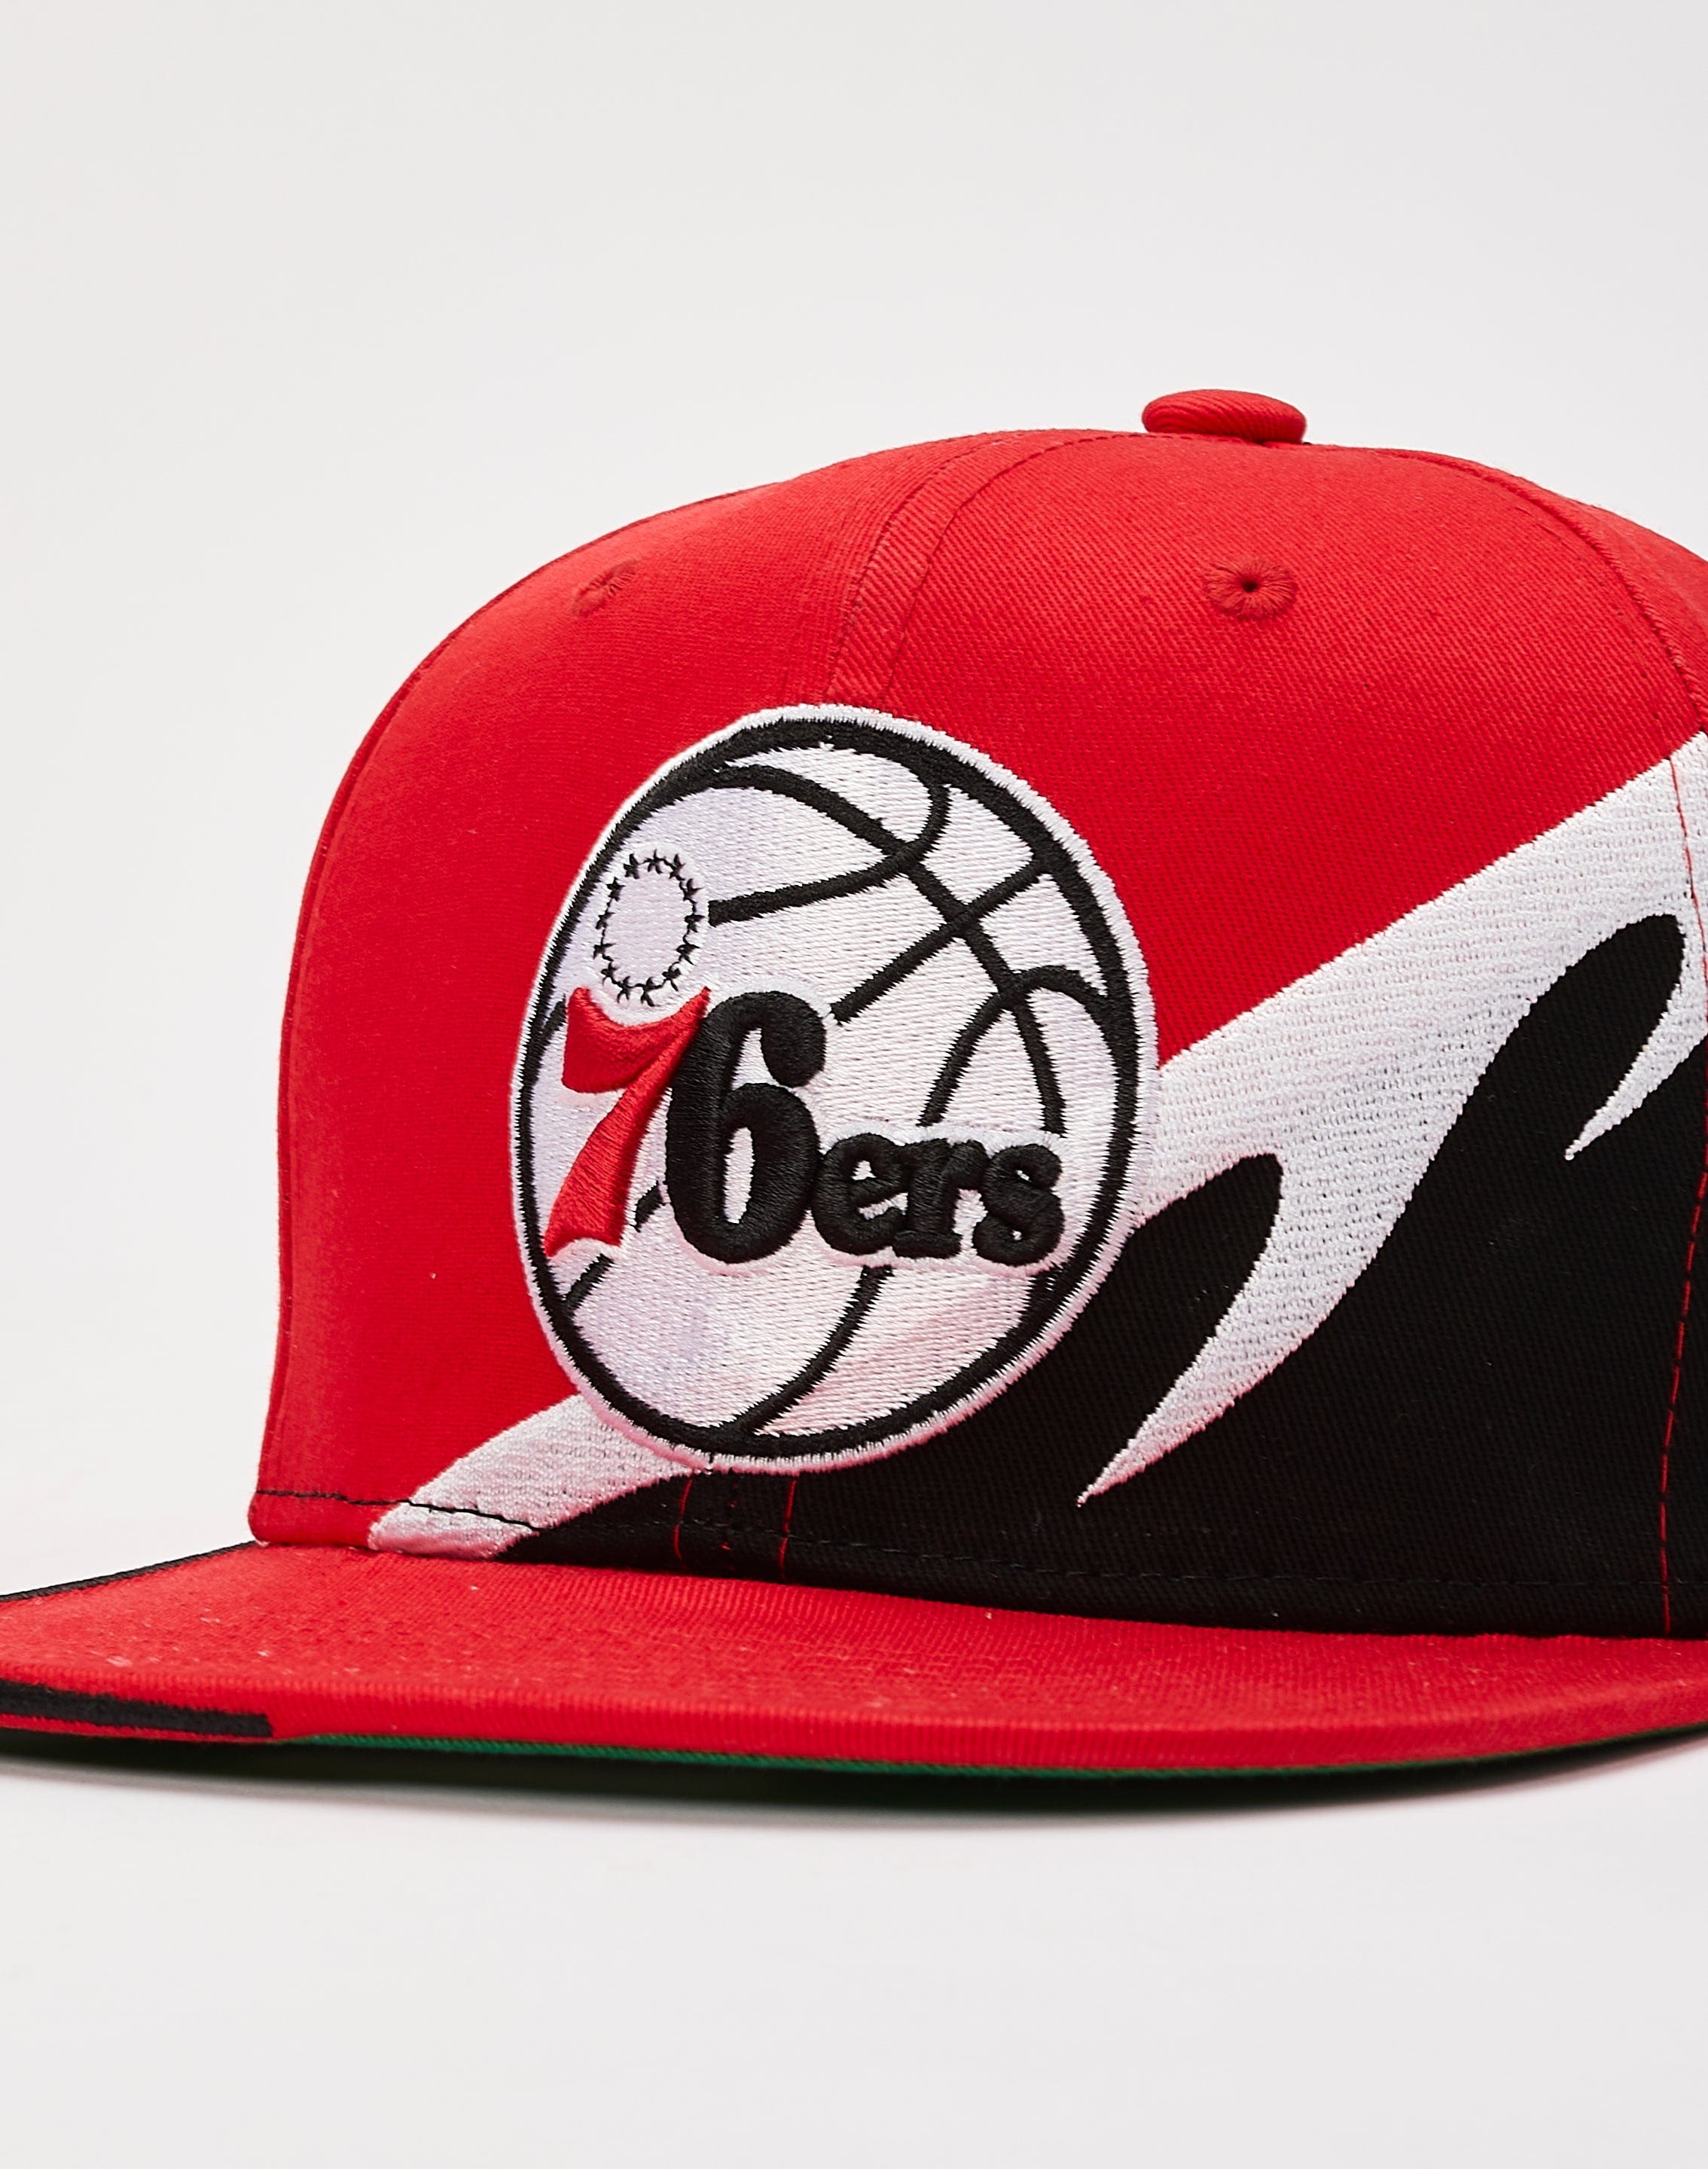 Philadelphia 76ers Hats, 76ers Snapback, Baseball Cap